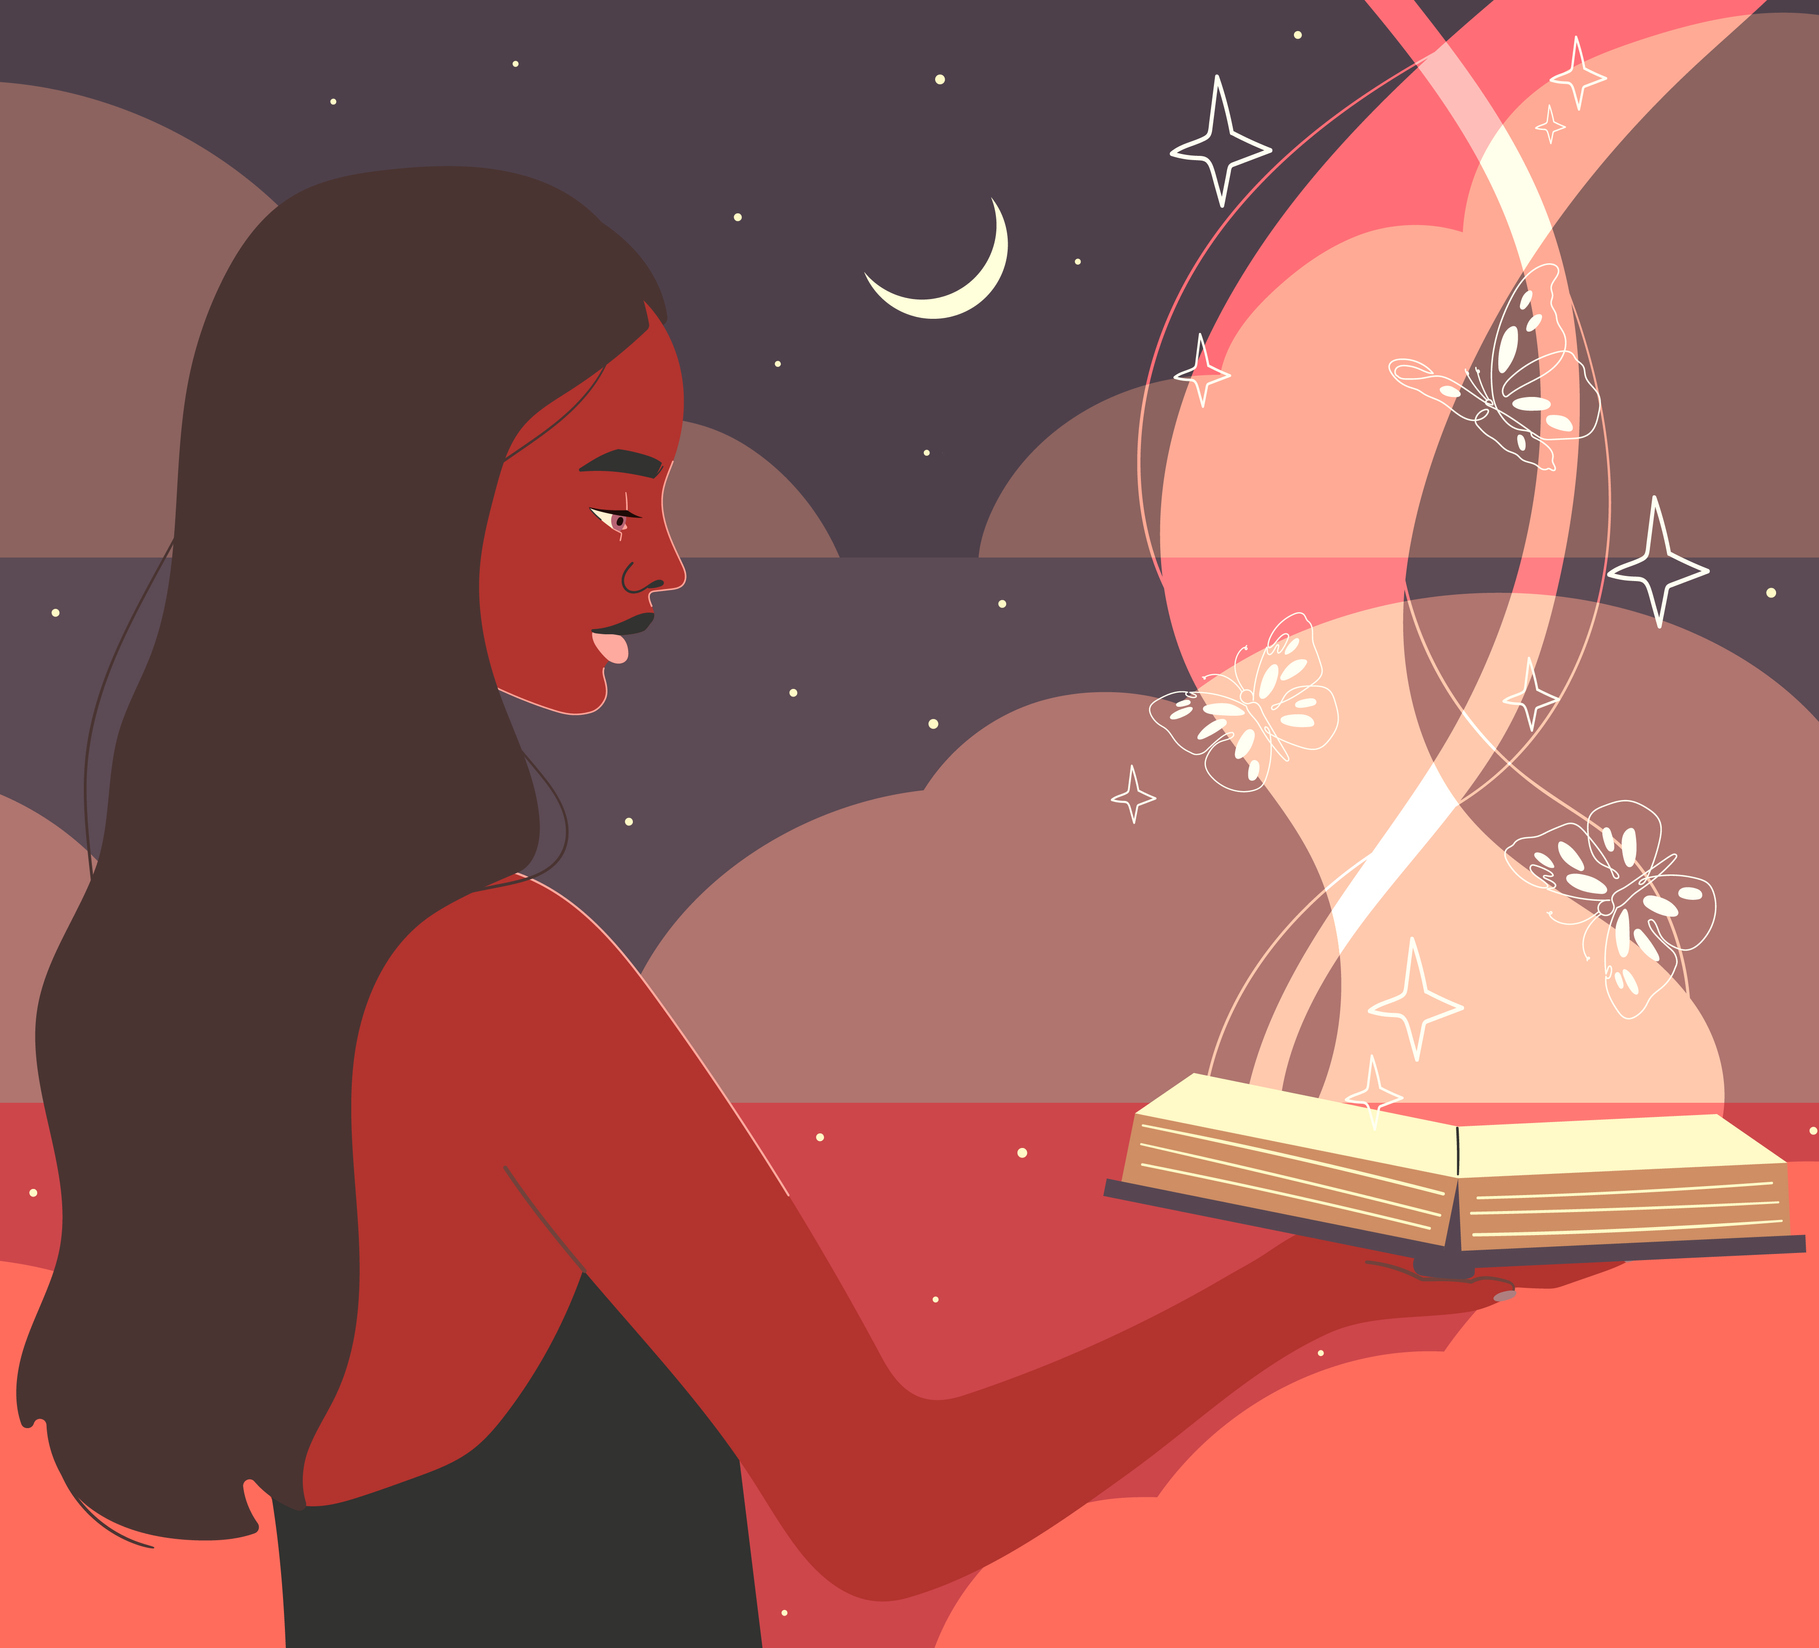 ilustratie cu o femeie din profil, ce se uita in jos si tine in mana o carte deschisa, in zare se observa semi-luna